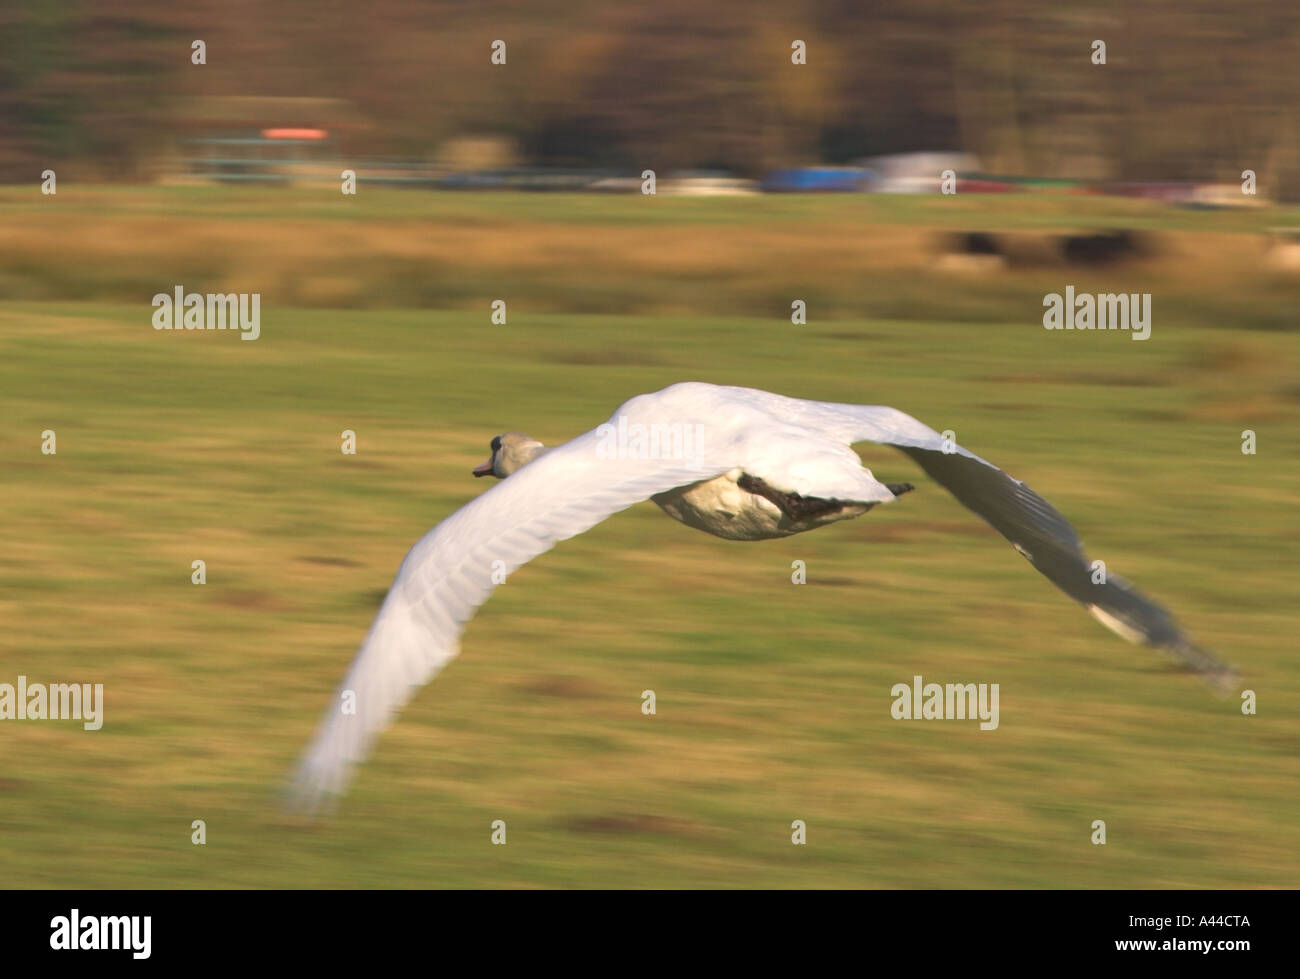 In Europa il Regno Unito Inghilterra swan volando a bassa quota sopra la terra Foto Stock